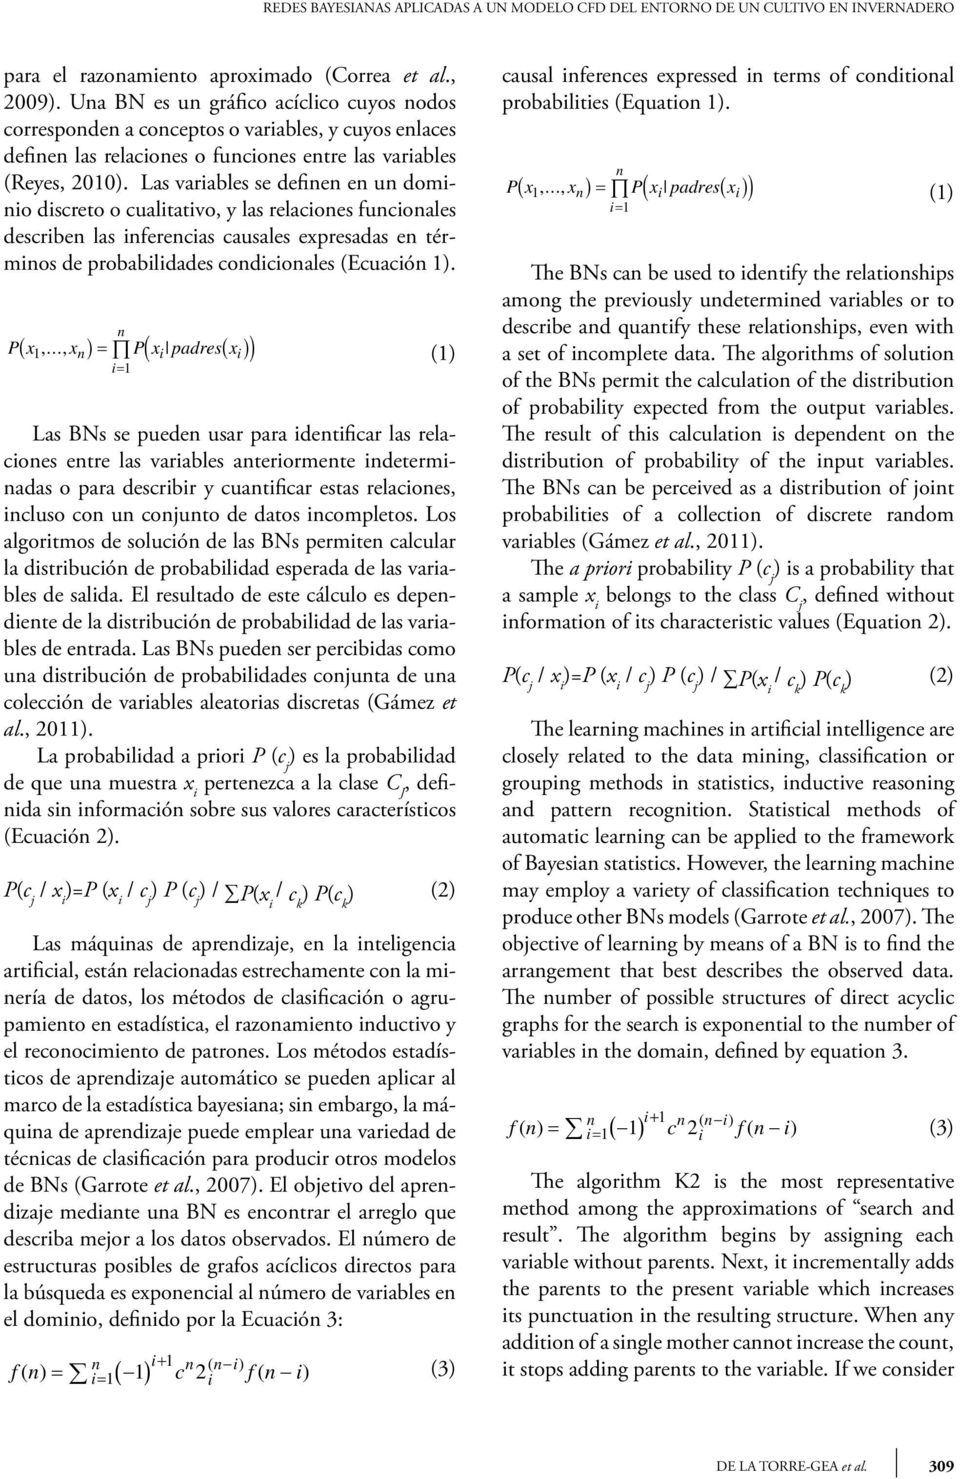 Las variables se definen en un dominio discreto o cualitativo, y las relaciones funcionales describen las inferencias causales expresadas en términos de probabilidades condicionales (Ecuación 1).